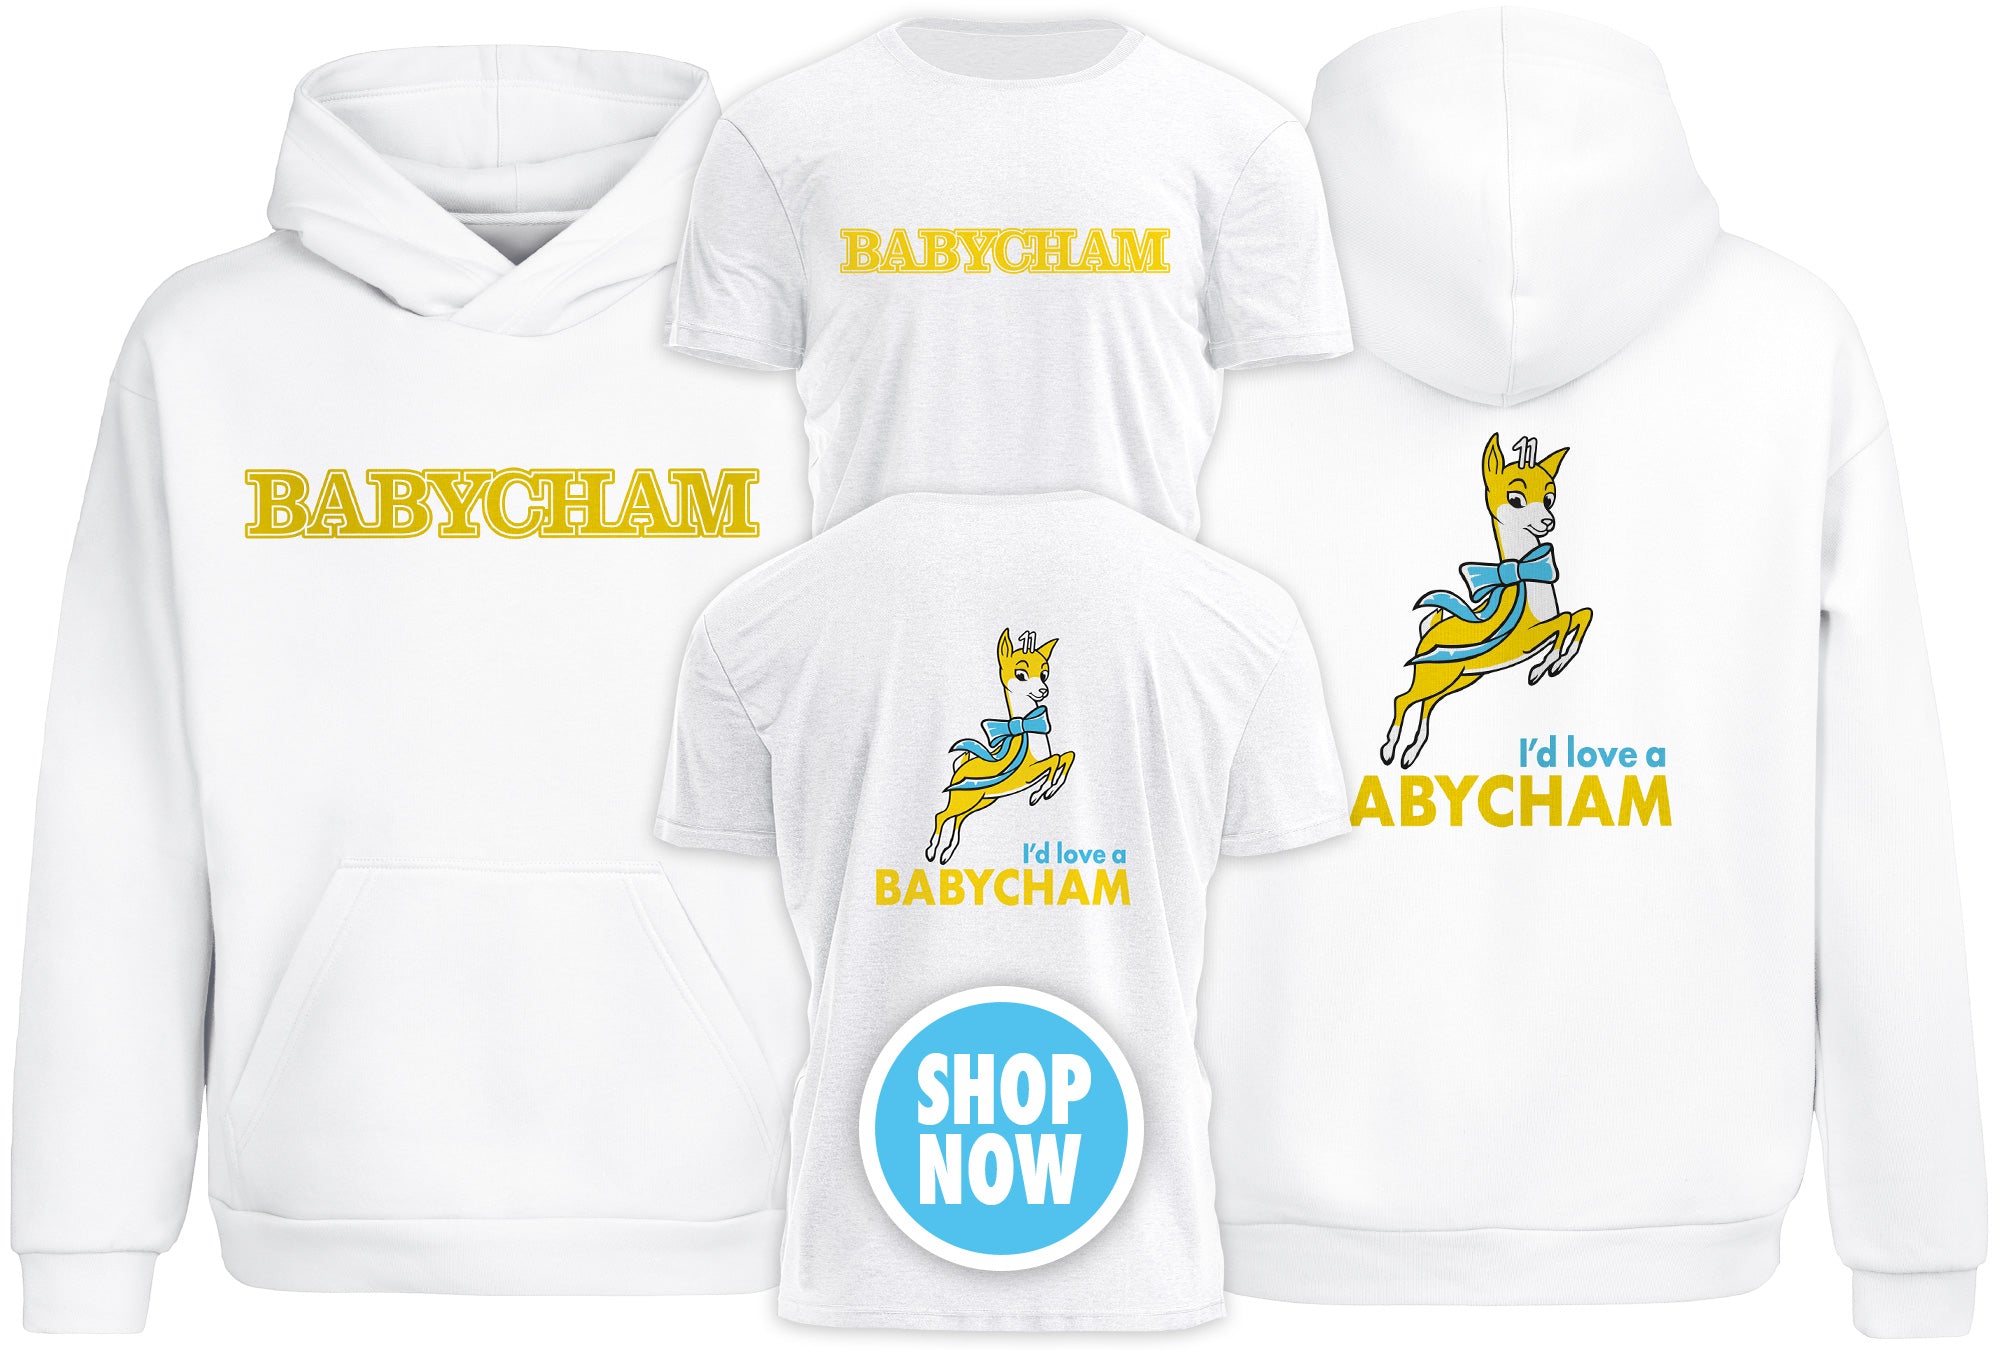 Classic White Babycham merchandise